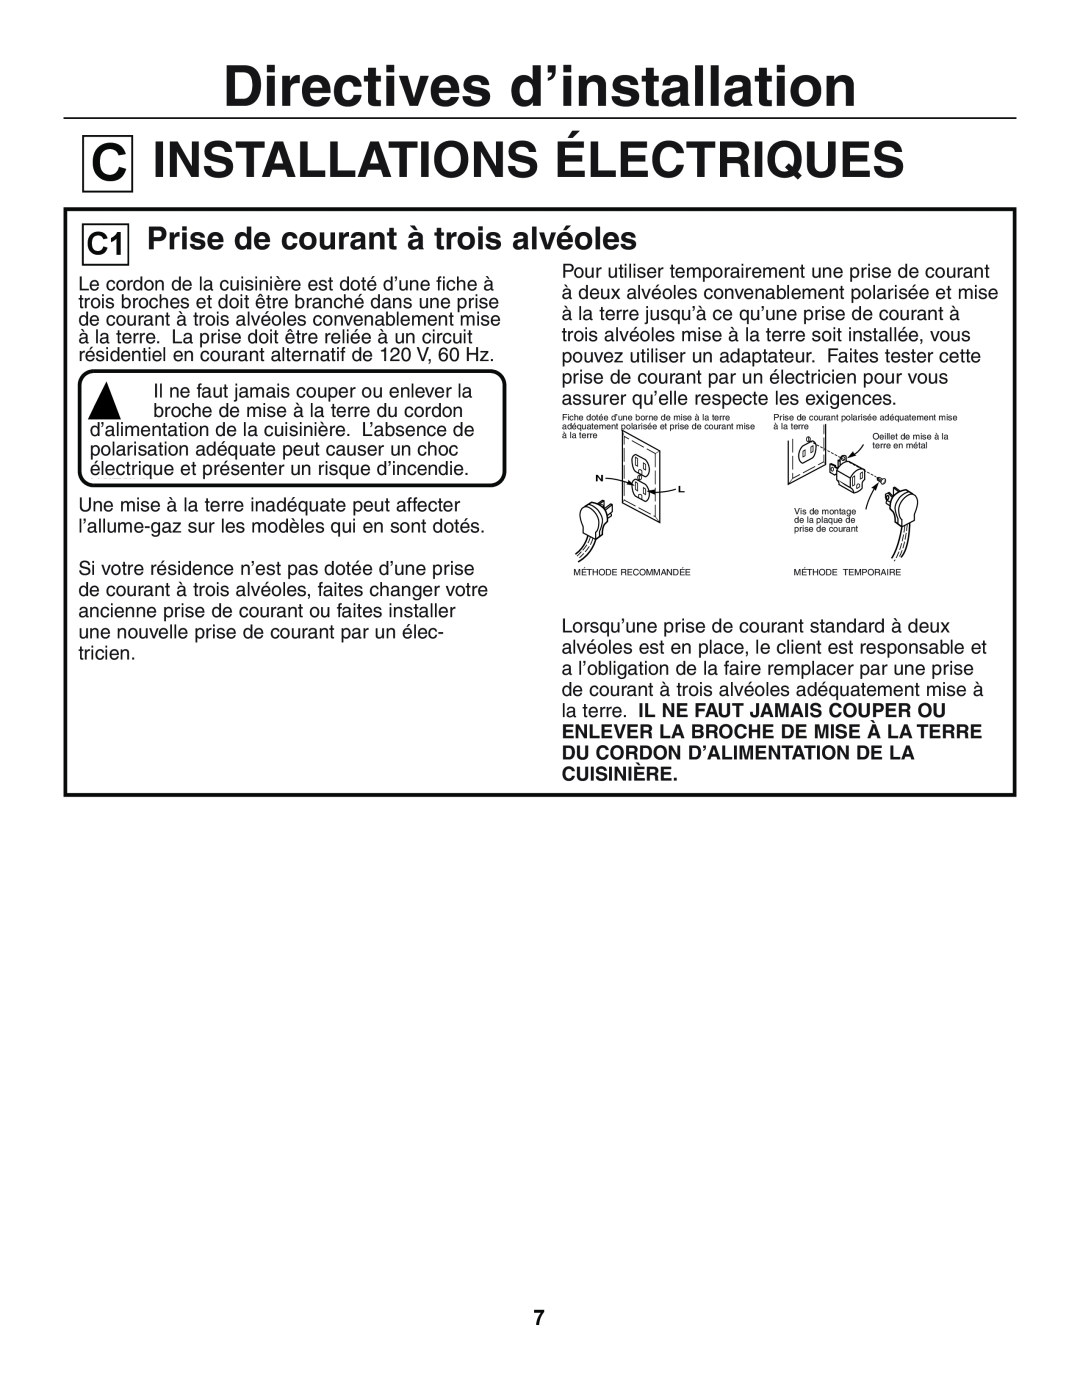 GE JGSP44 manual ElectricalINSTALLATIONSConnections ÉLECTRIQUES, Prise de courant à trois alvéoles, The Thr e-Prong Outlet 